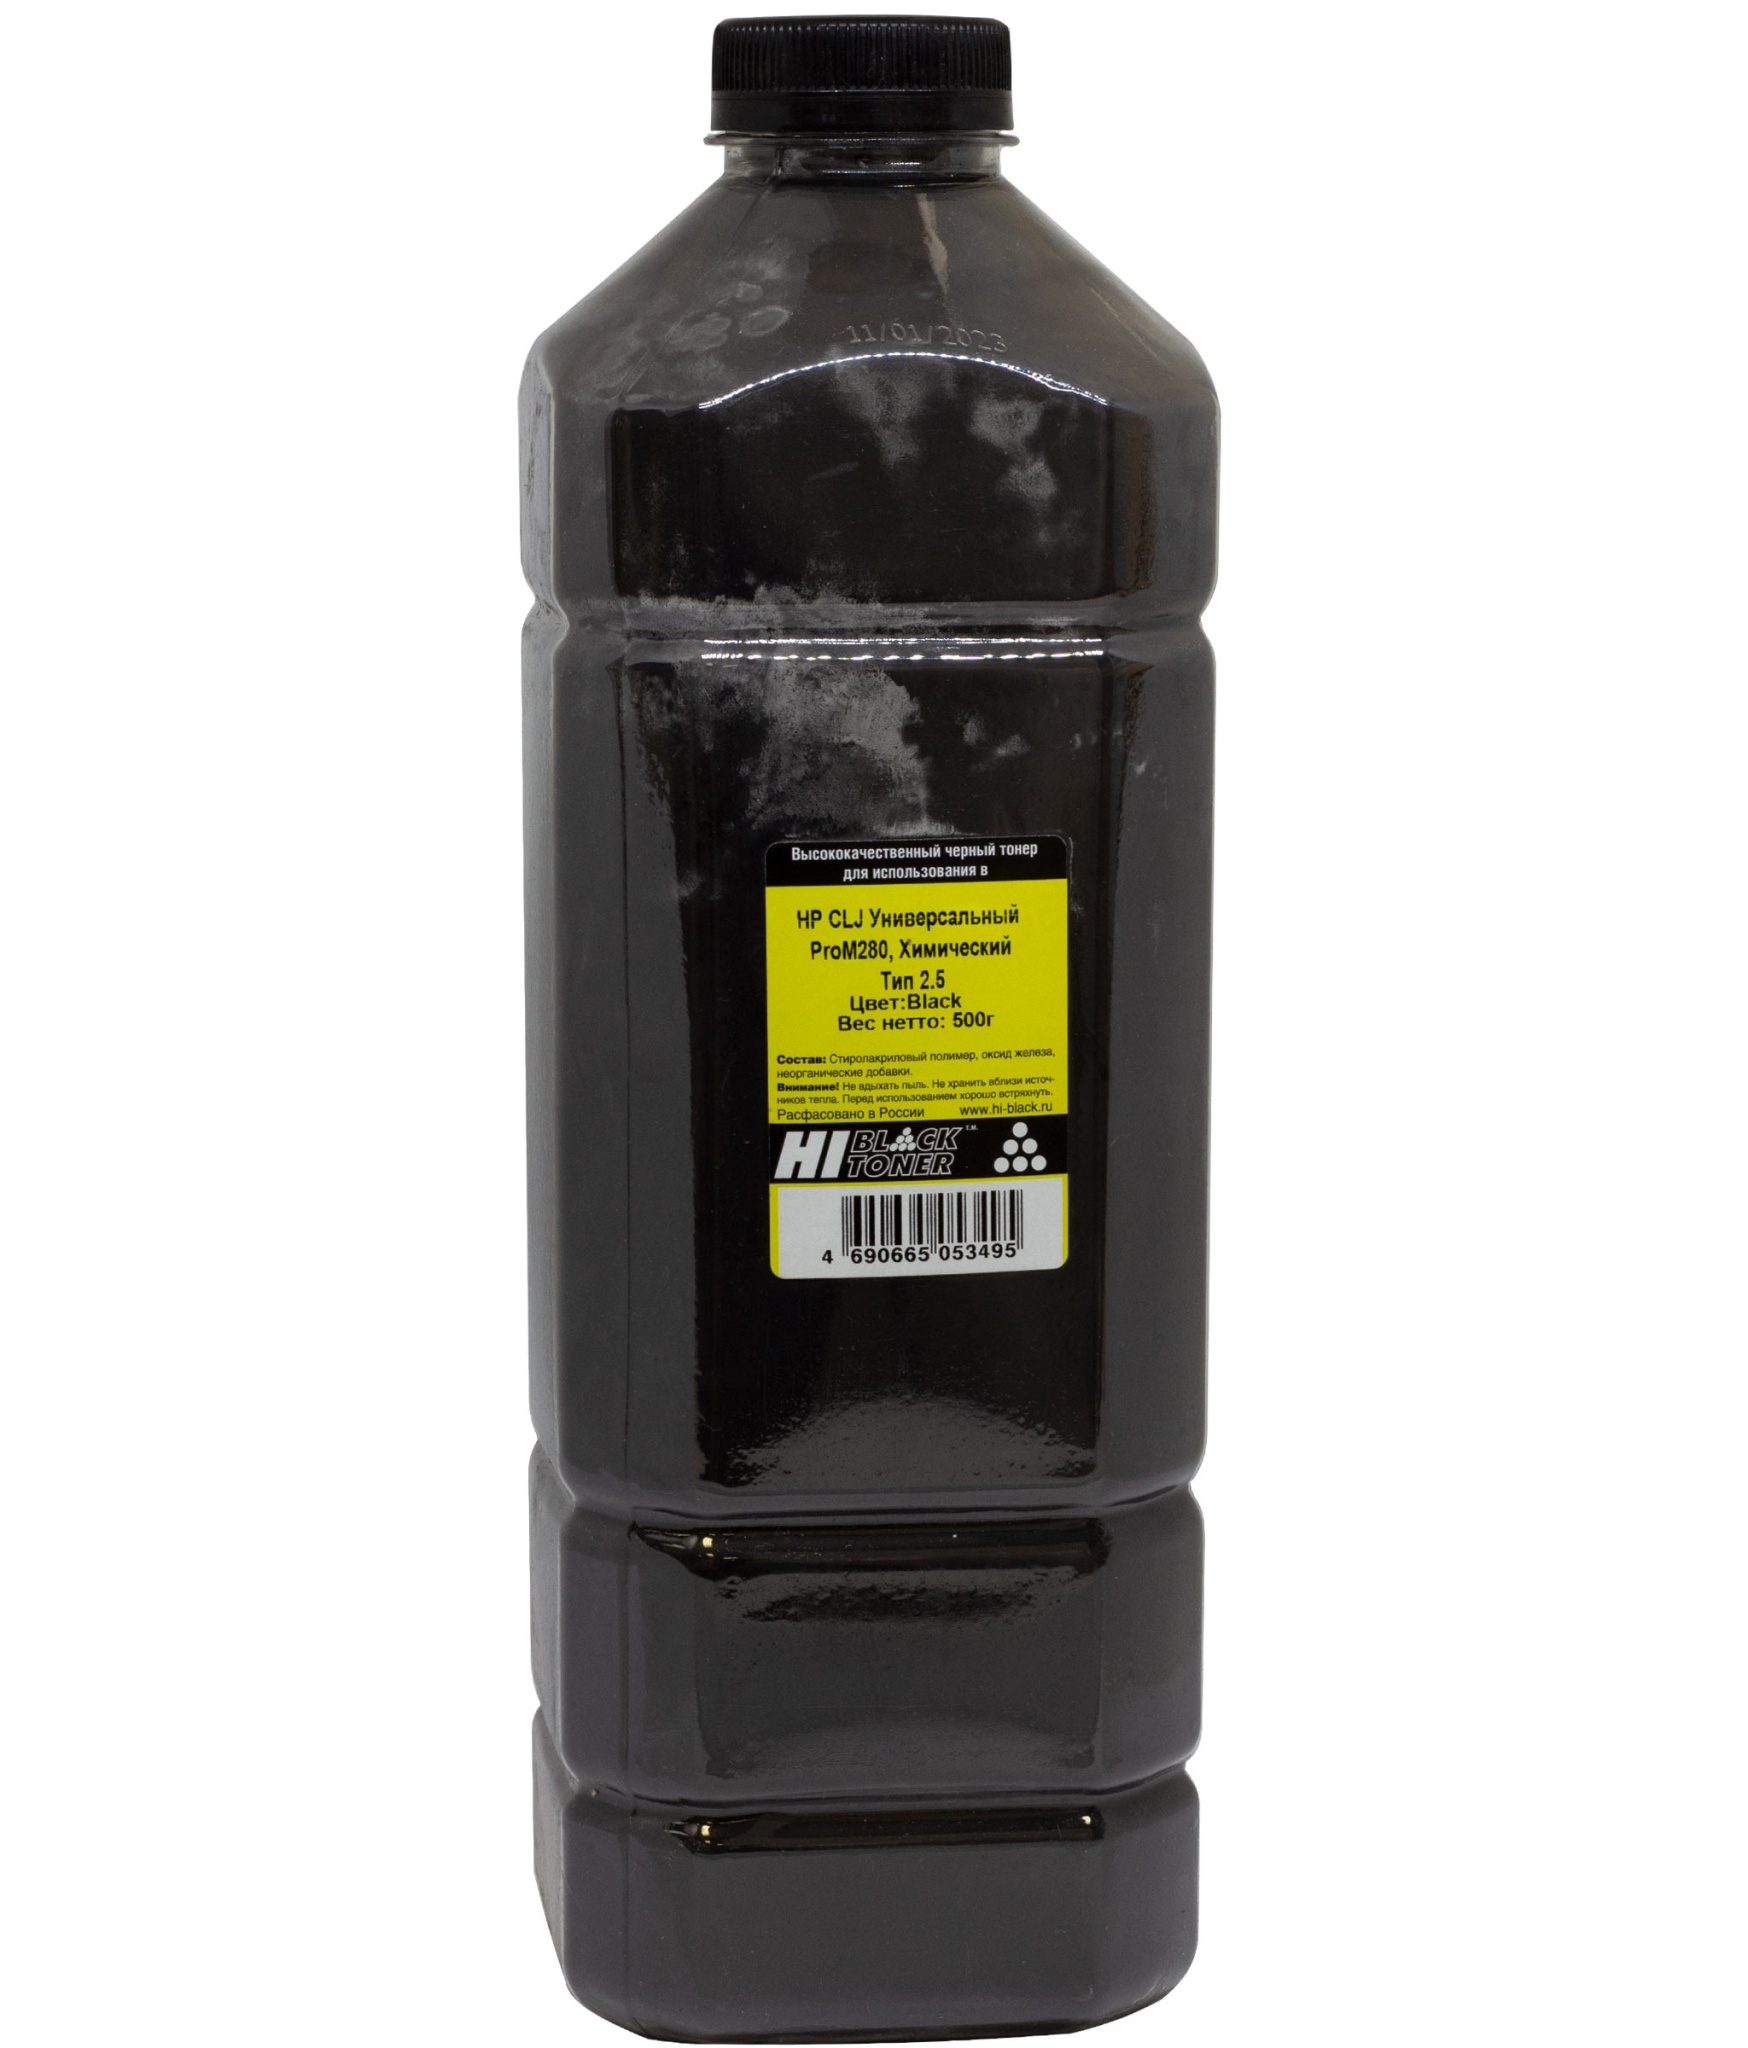 Тонер универсальный Hi-Black (CF540A) для HP CLJ Pro M280, Тип 2.5, химический, чёрный (500 гр.)